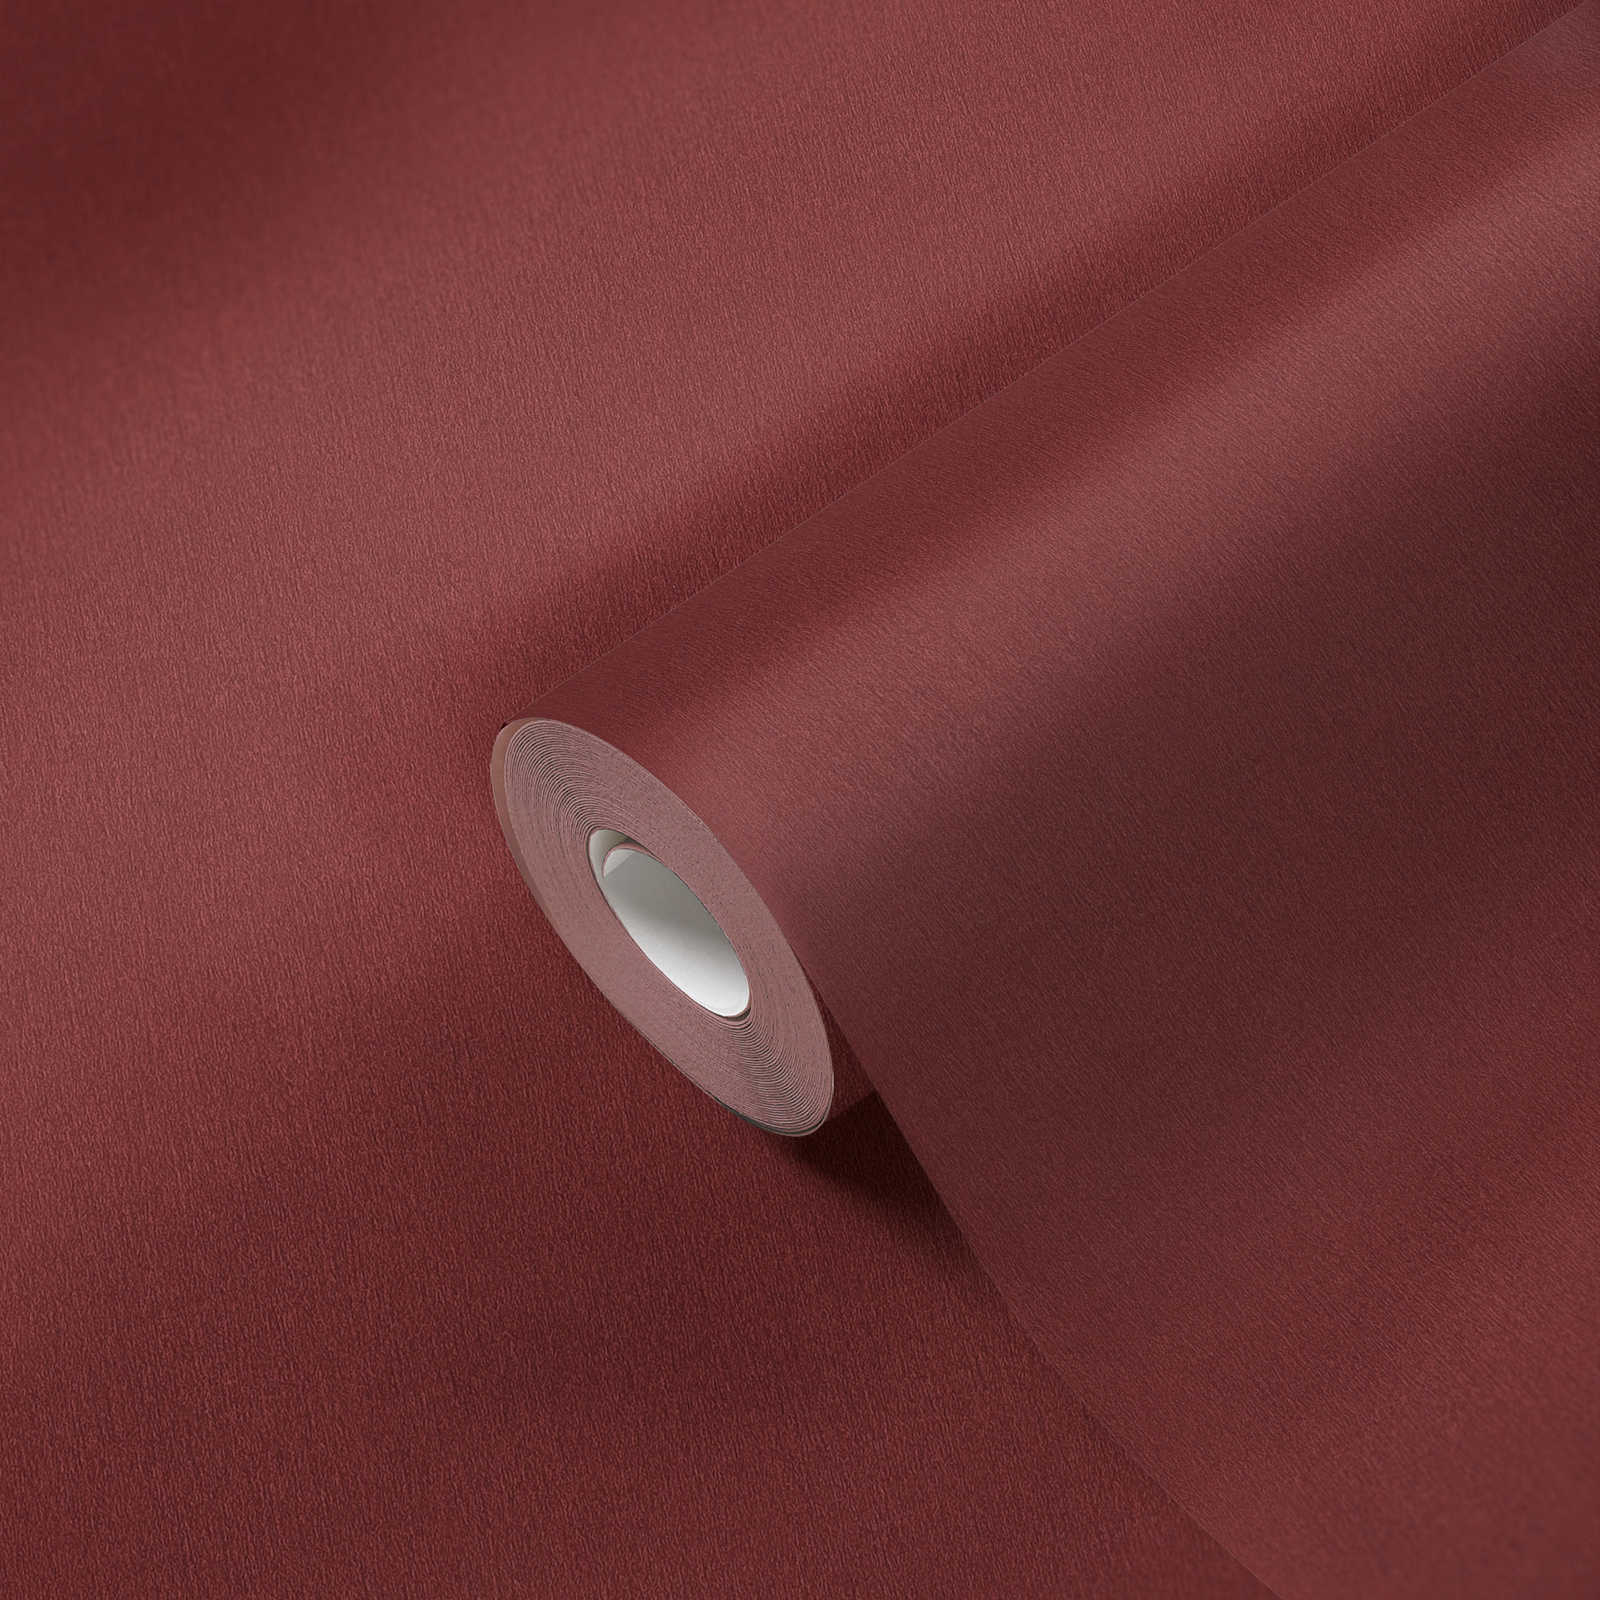             papel pintado rojo burdeos con estructura de color - rojo oscuro
        